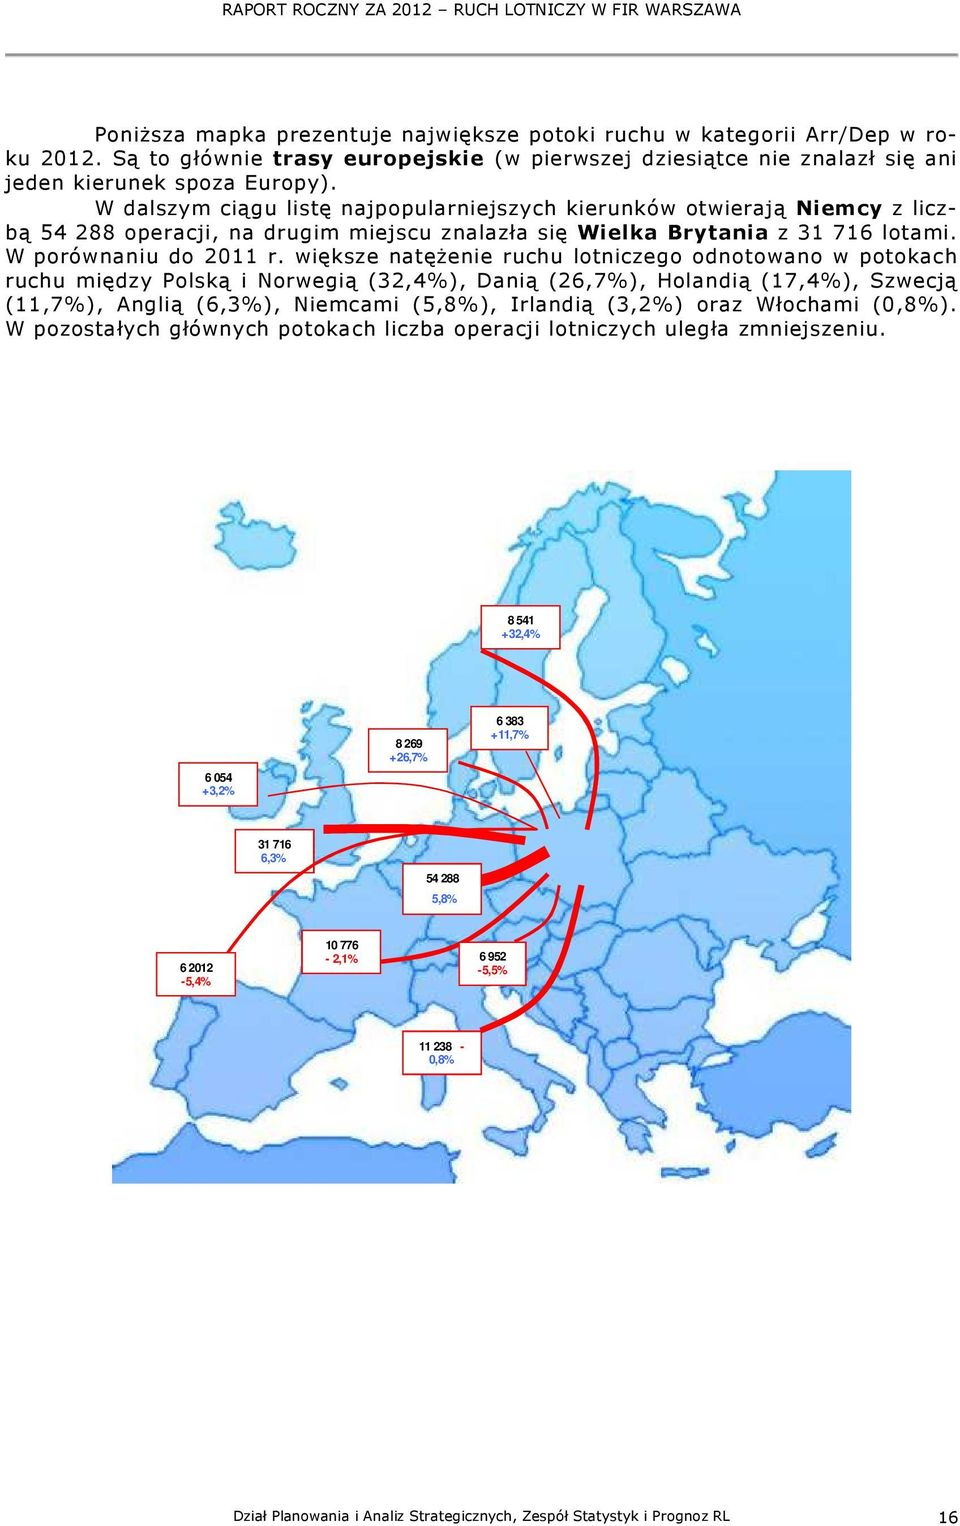 W dalszym ciągu listę najpopularniejszych kierunków otwierają Niemcy z liczbą 54 288 operacji, na drugim miejscu znalazła się Wielka Brytania z 31 716 lotami. W porównaniu do 211 r.